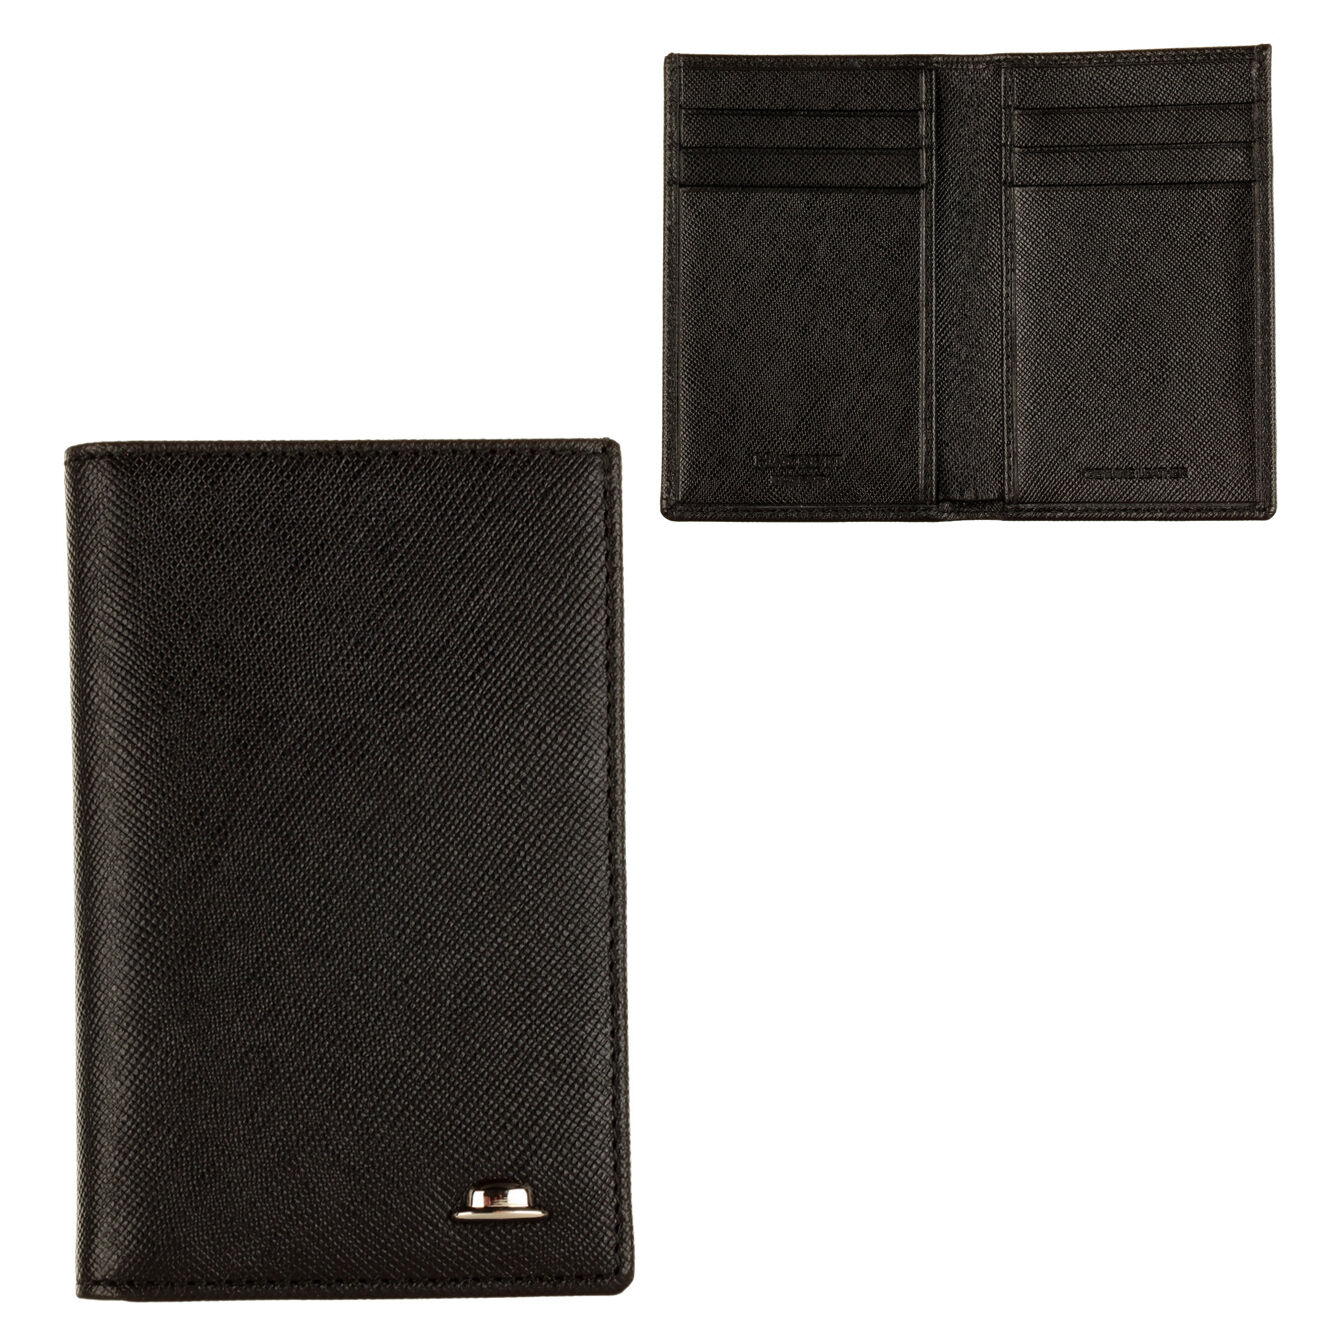 Porte cartes & billets cuir saffiano noir - 7.5 x 10.5 cm